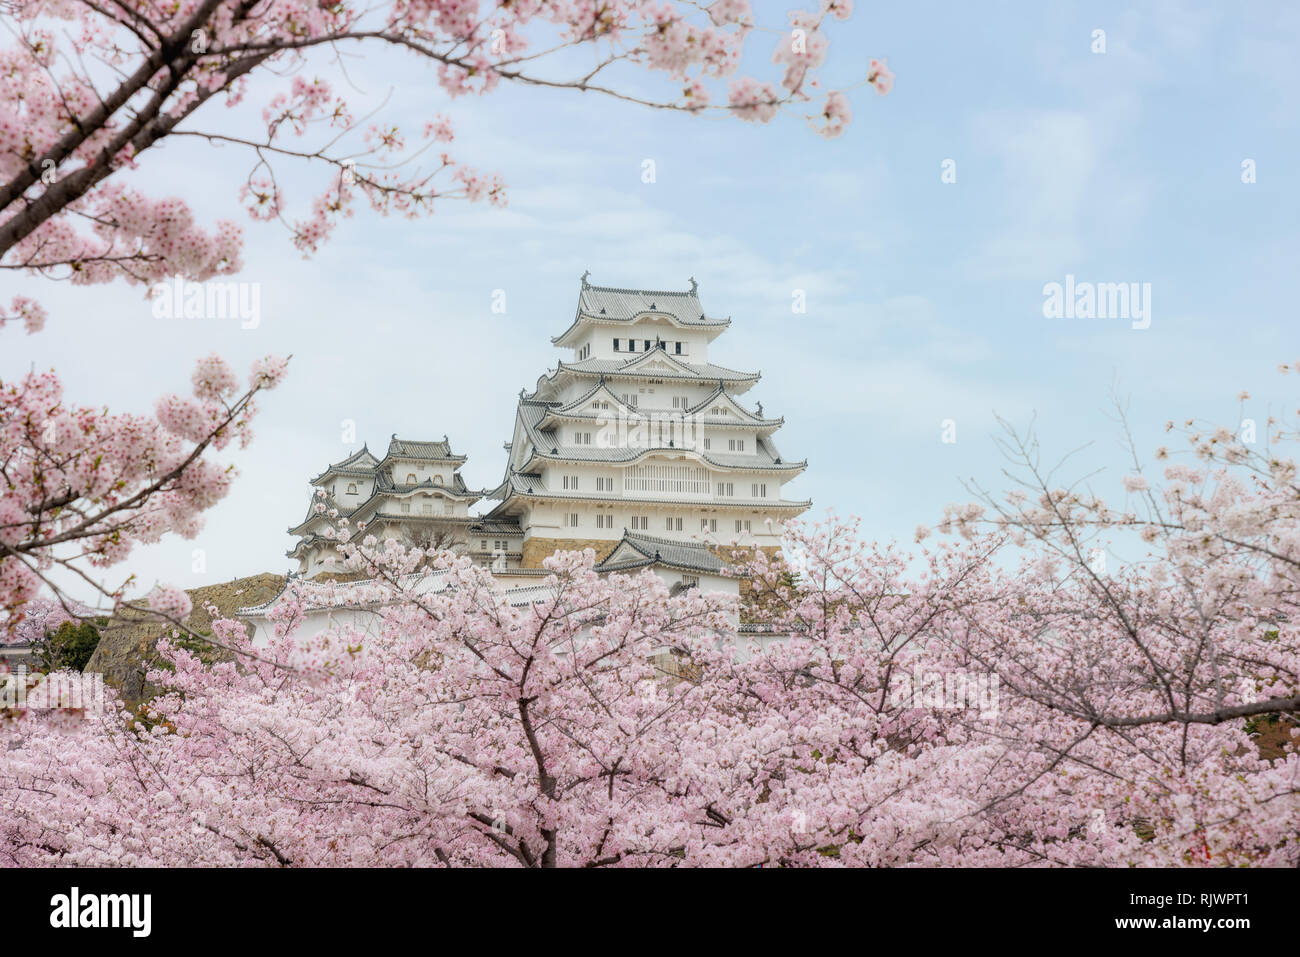 Château de Himeji avec de beaux cerisiers en fleurs au printemps saison à Agadir près d'Osaka, au Japon. Château de Himeji est célèbre cherry blossom vue dans Osaka, Ja Banque D'Images